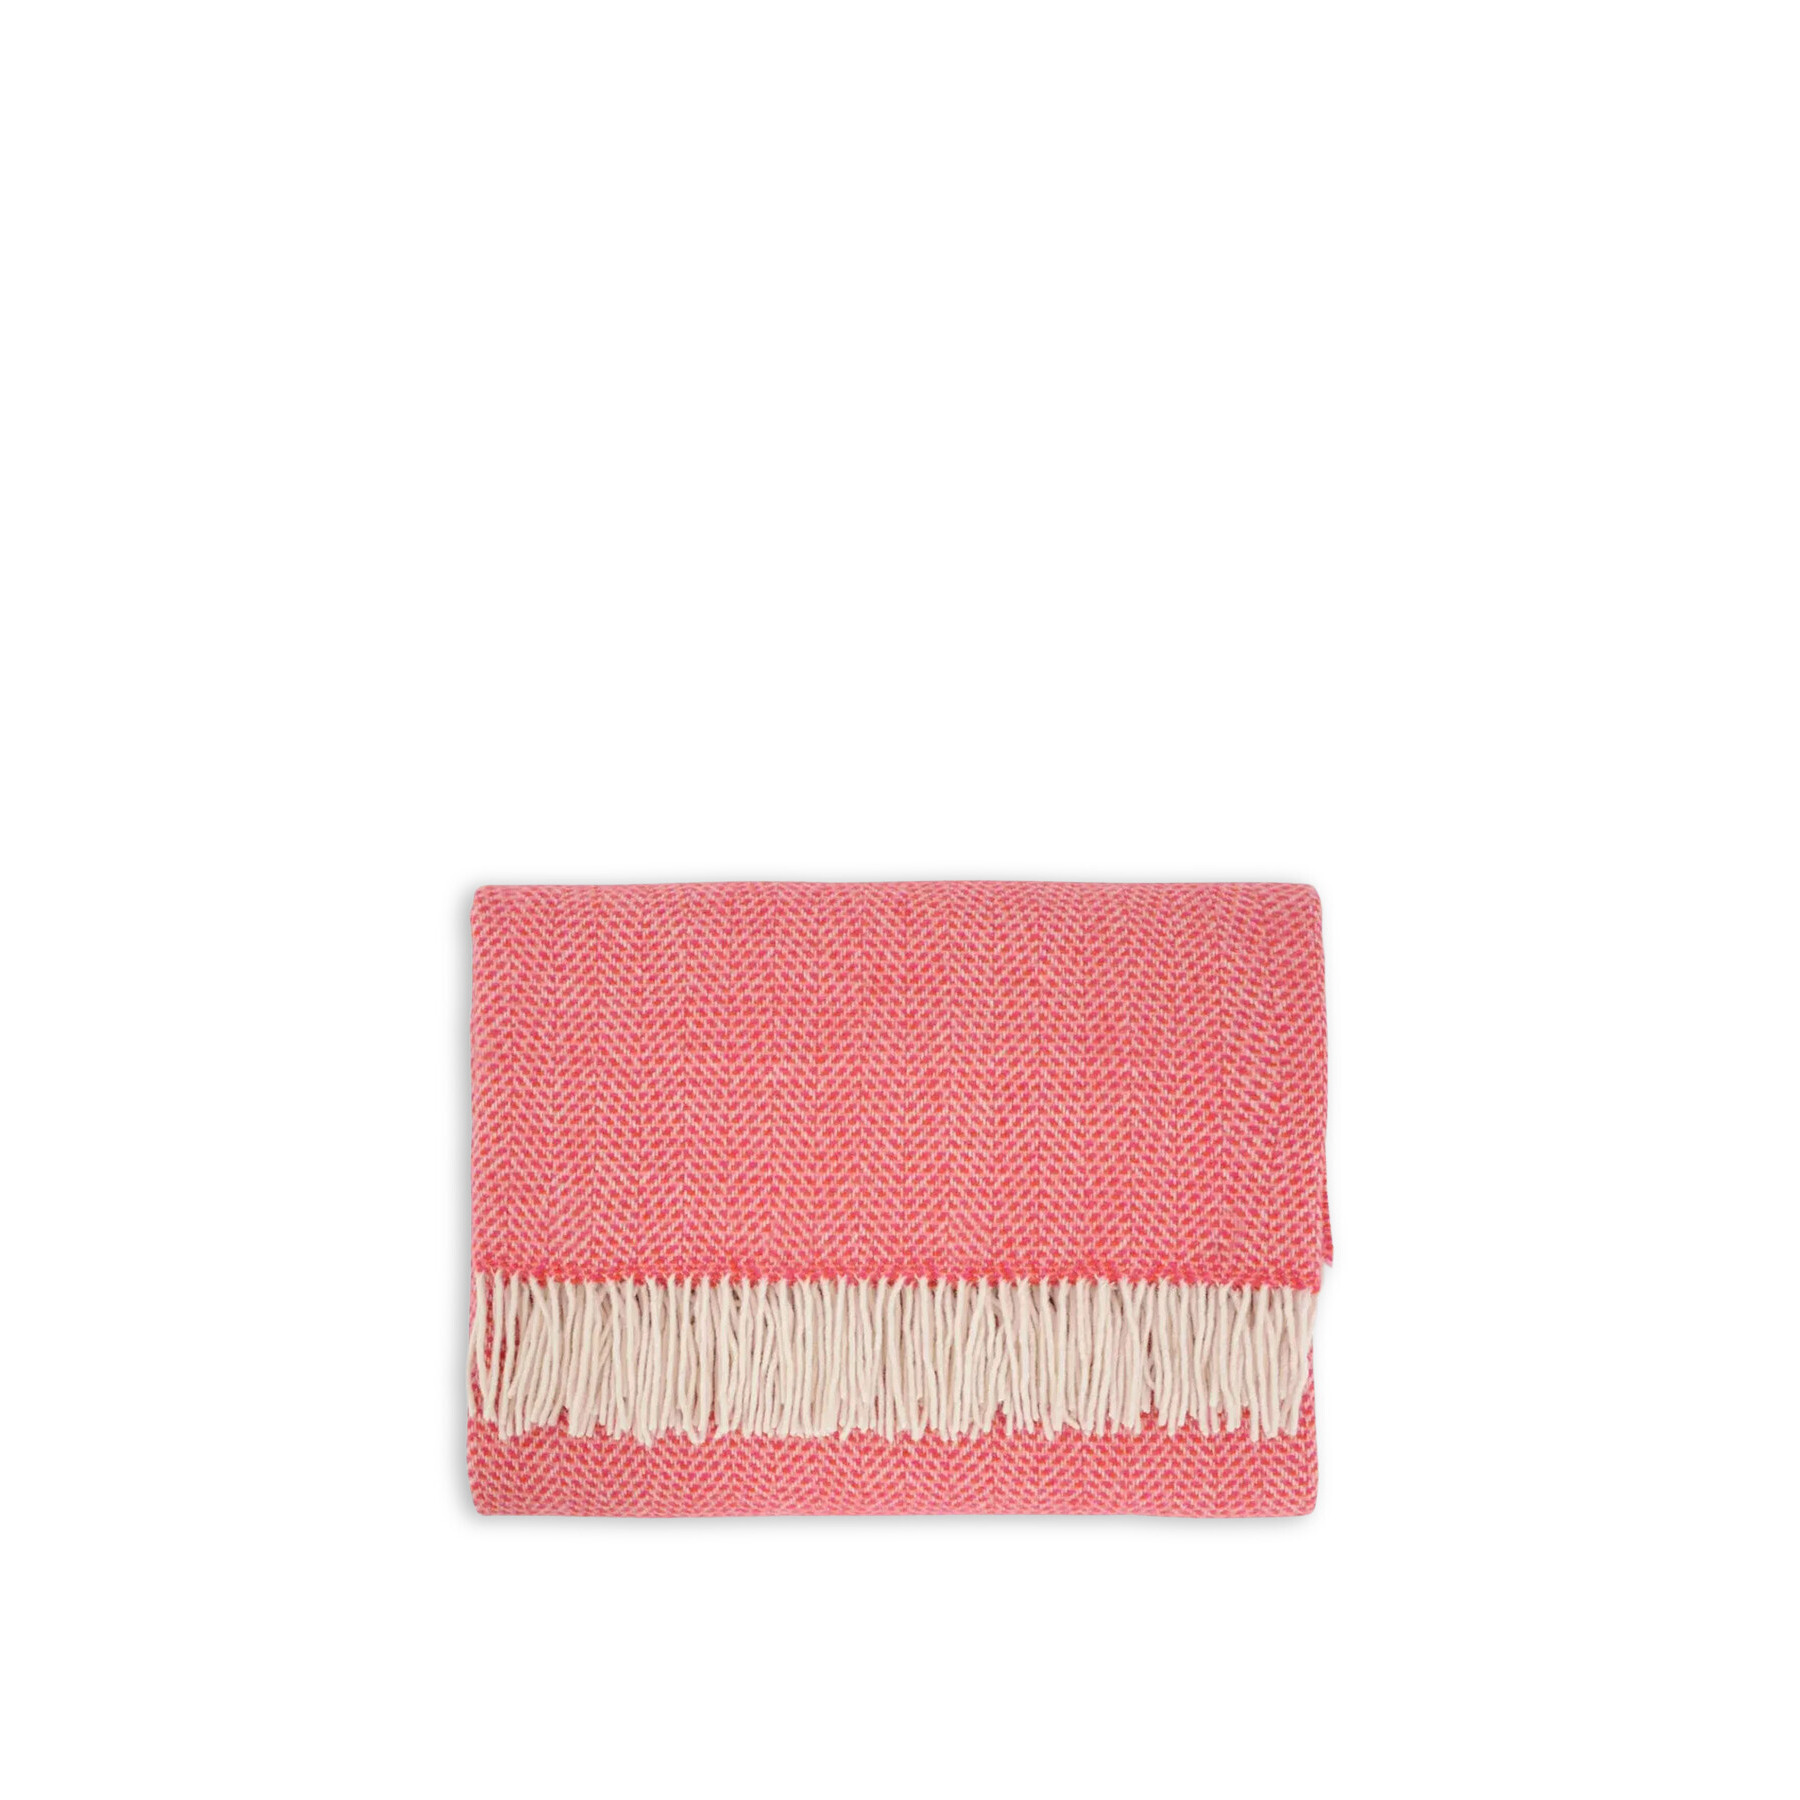 Heal's Merino & Cashmere Throw Herringbone - Size 136 x 180 Pink - image 1